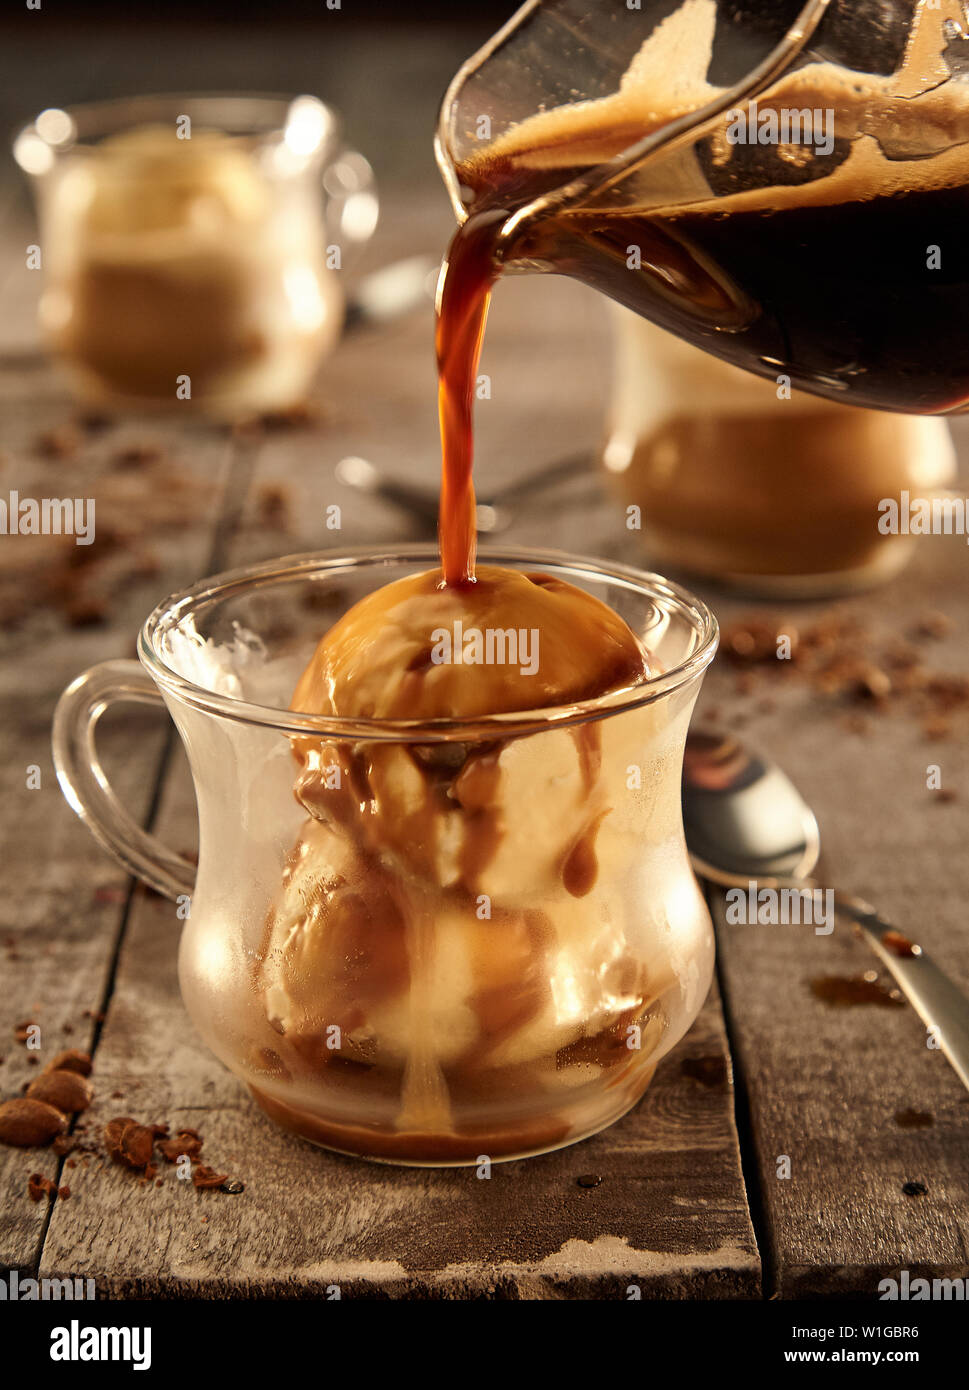 Afogato - Espresso and Ice Cream Stock Photo